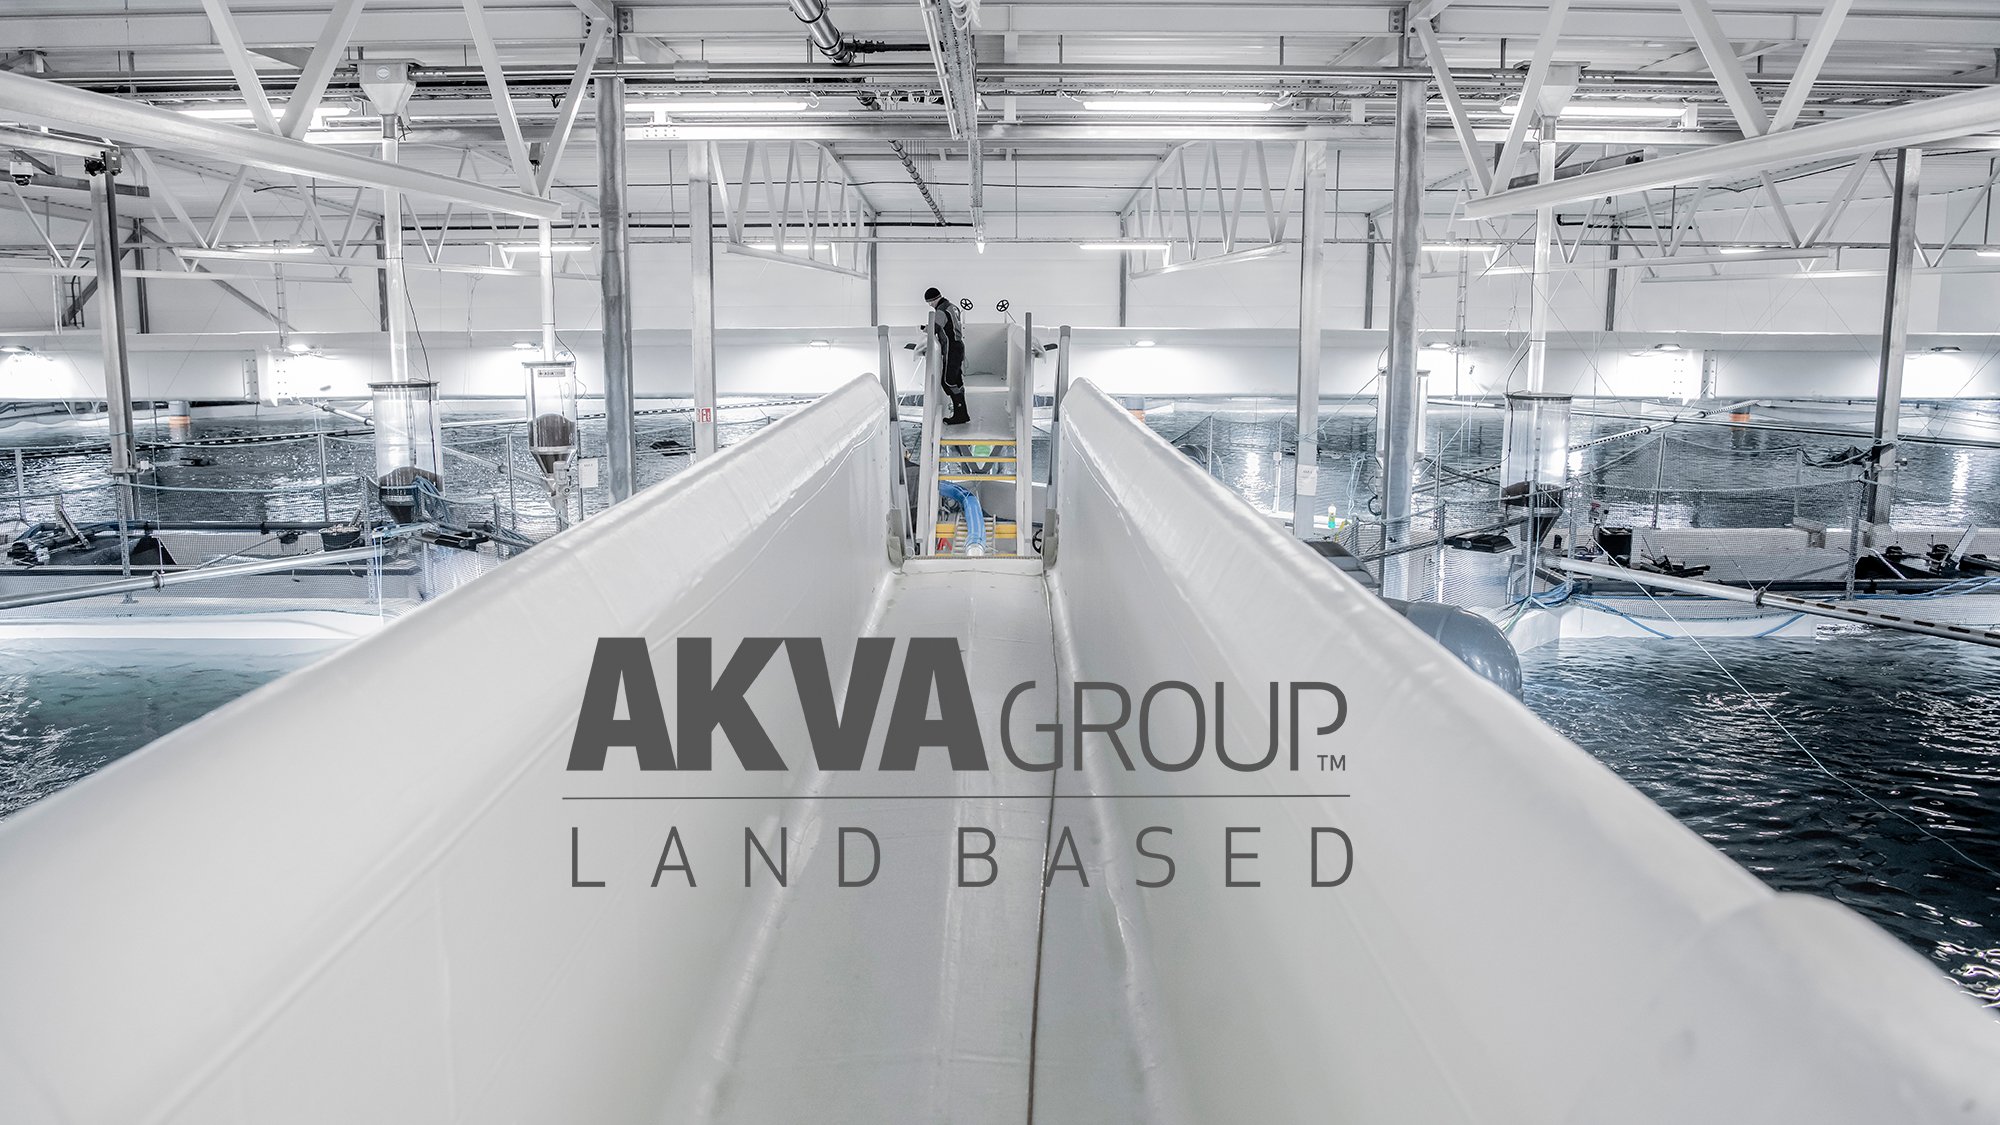 AKVA group Land Based 16x9